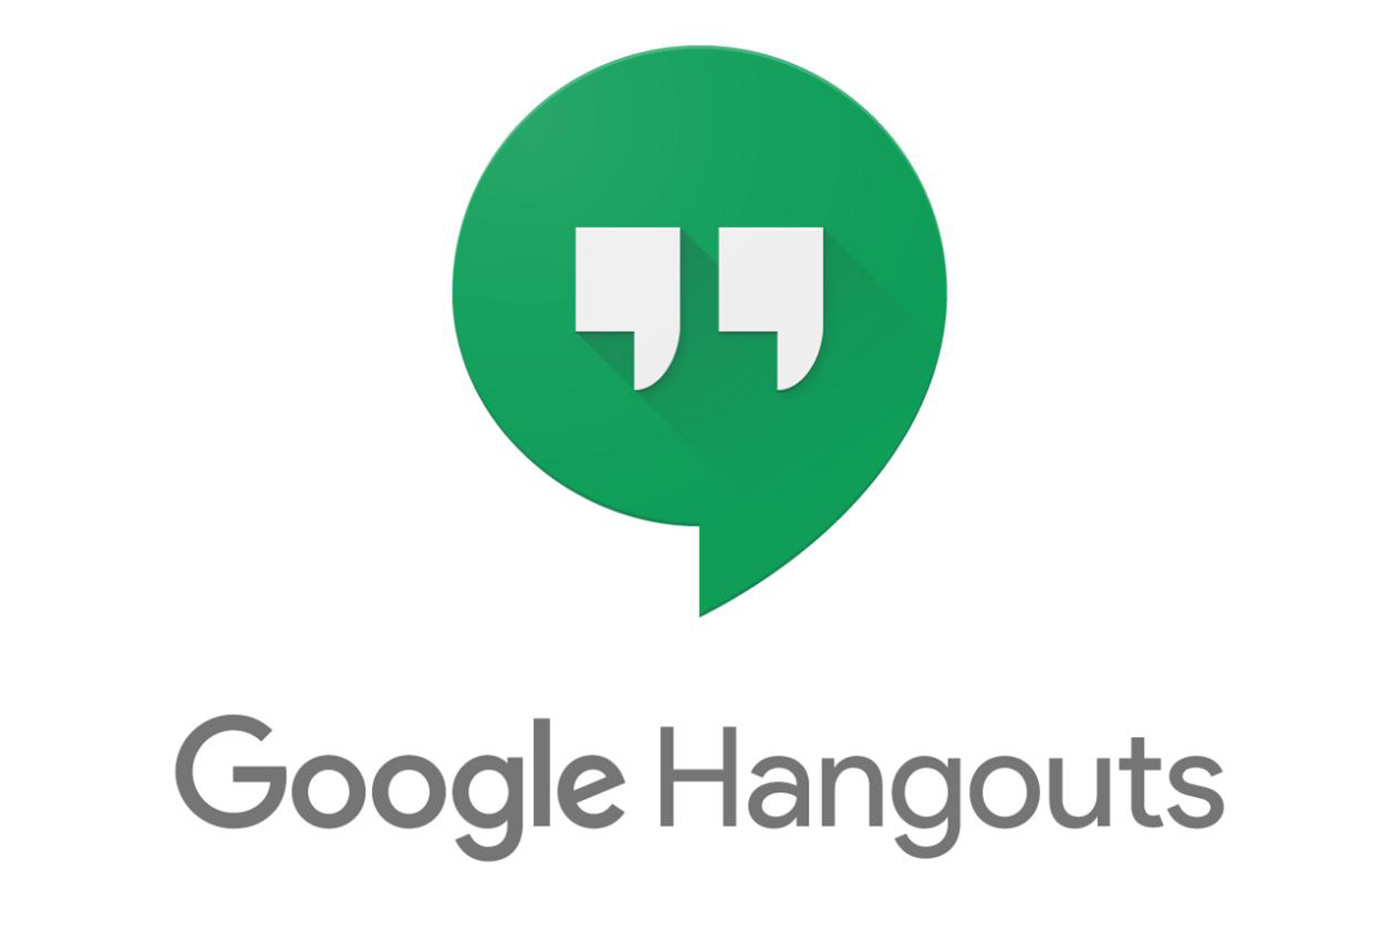 Google Hangouts a droit à un délai supplémentaire avant l'annonce de son décès